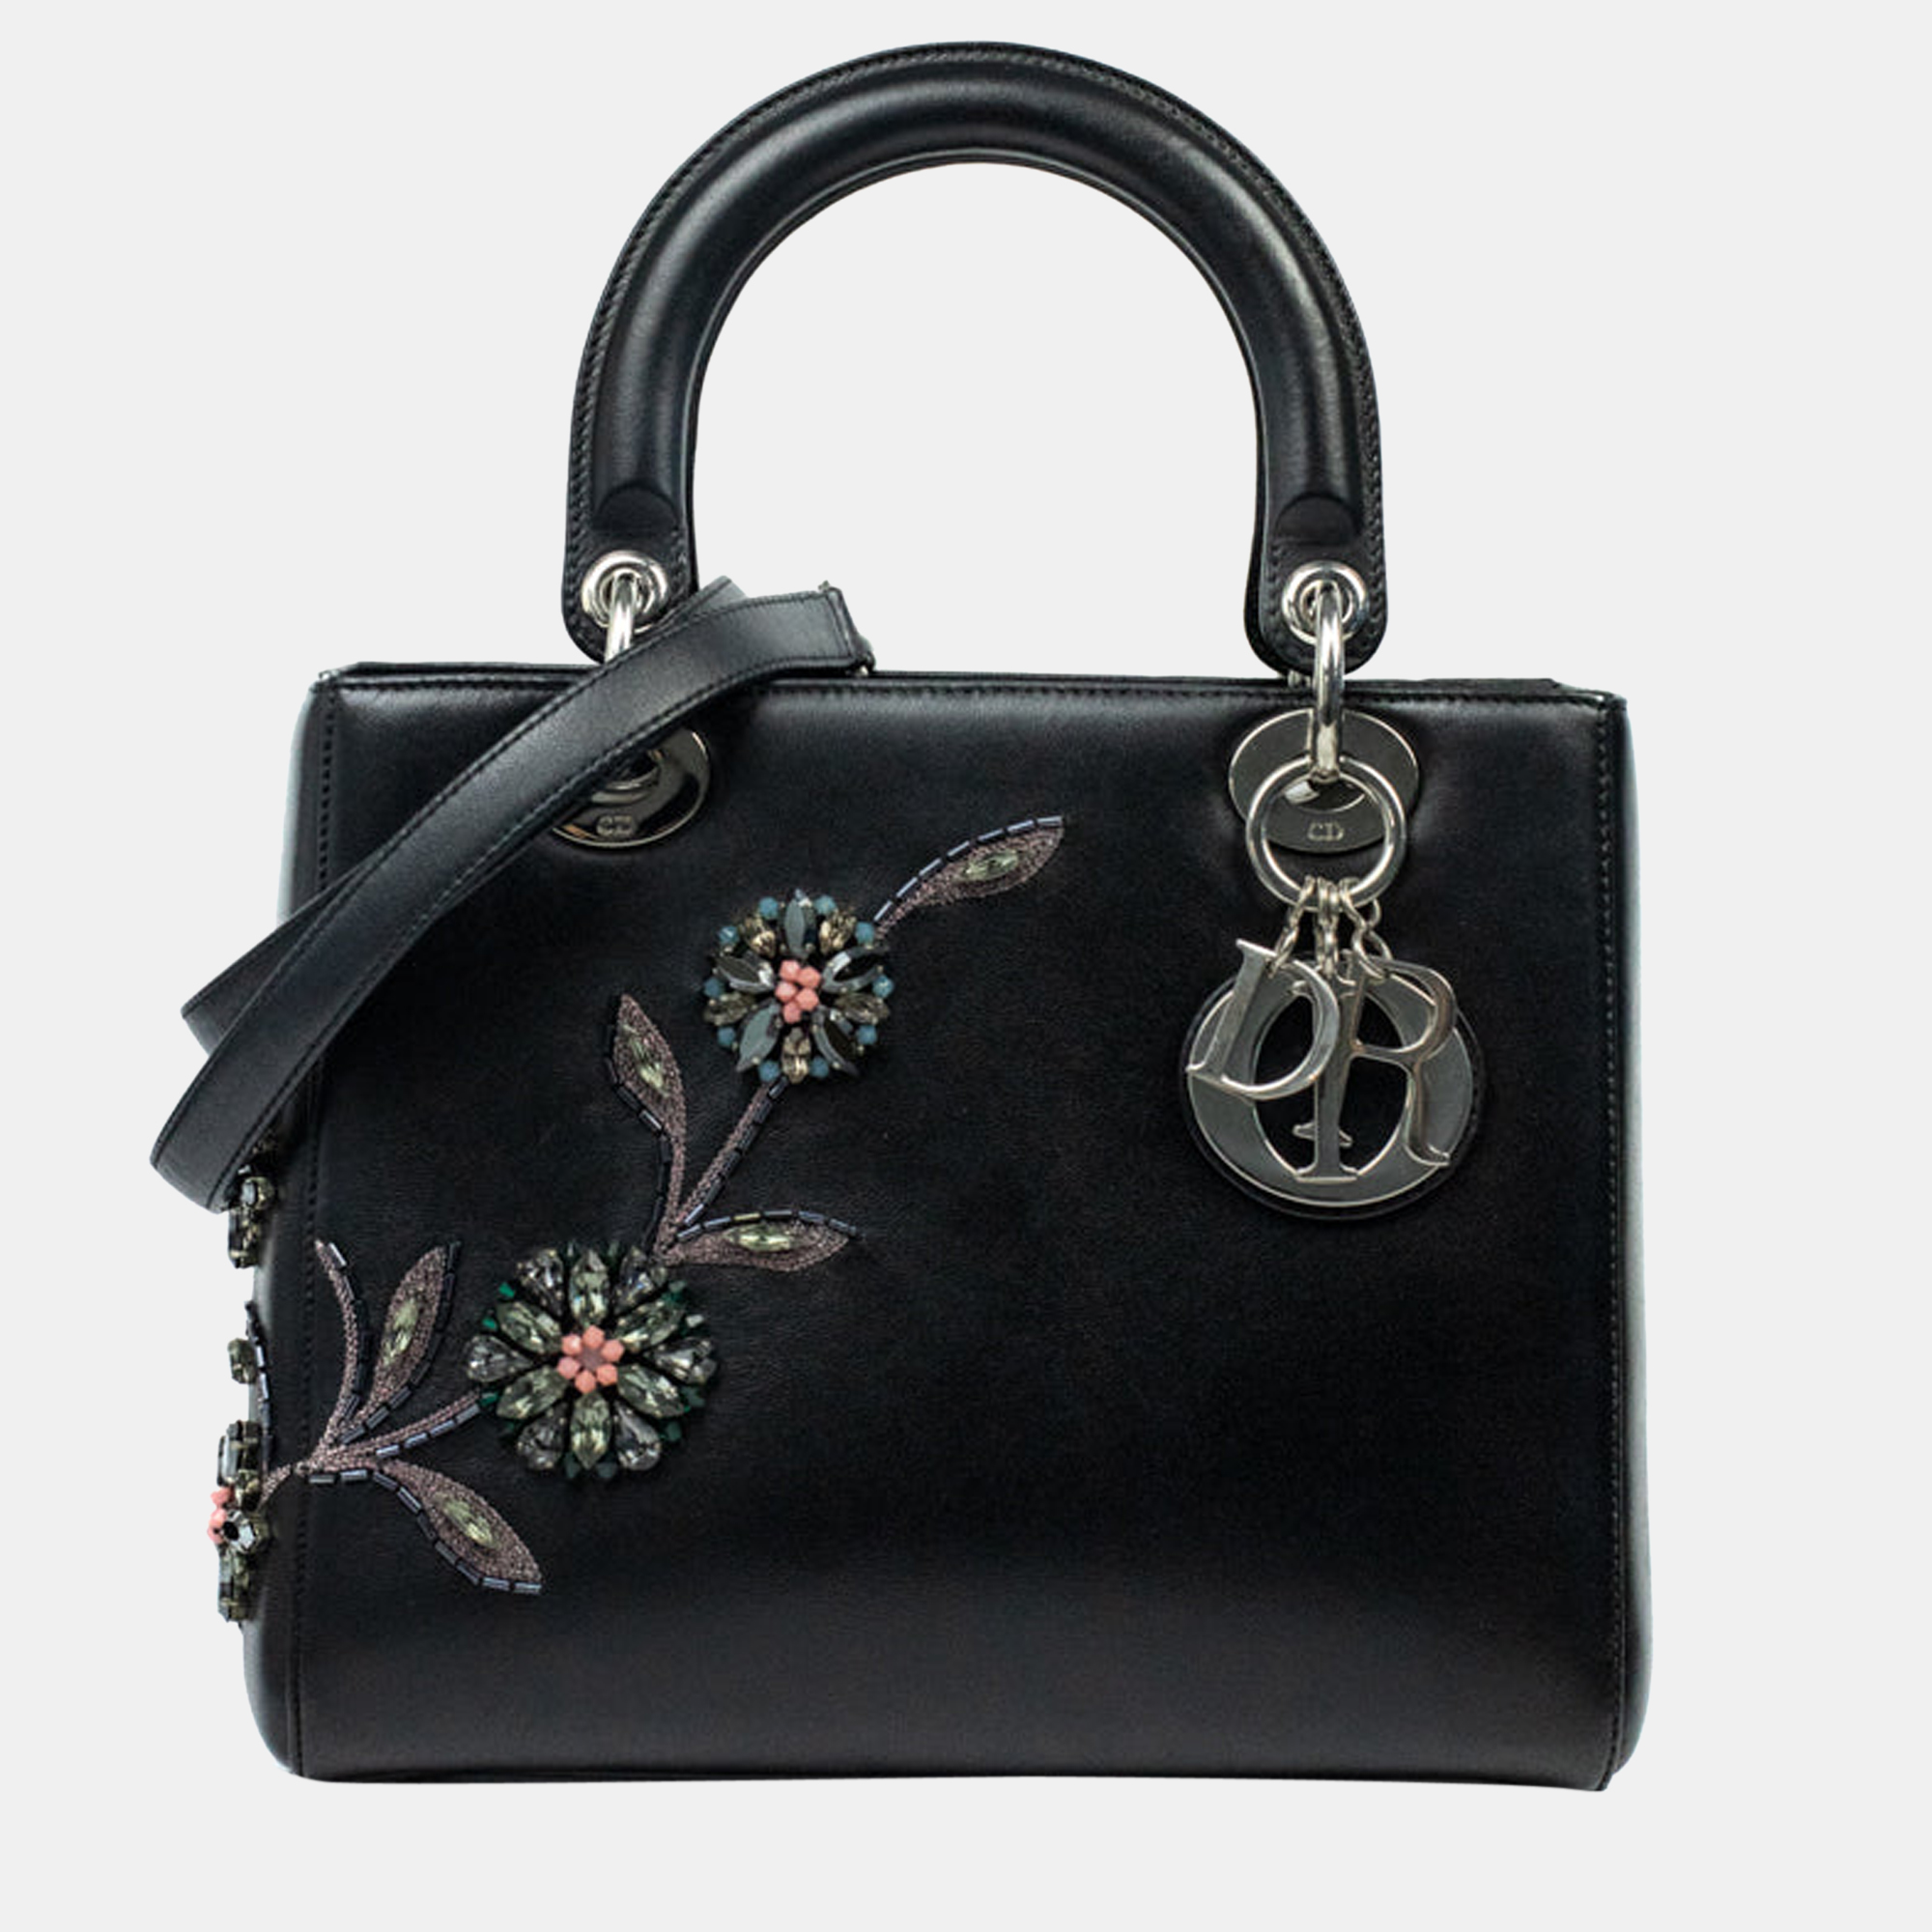 Dior Black Leather Medium Flower Patch Embellished Lady Dior Tote Bag